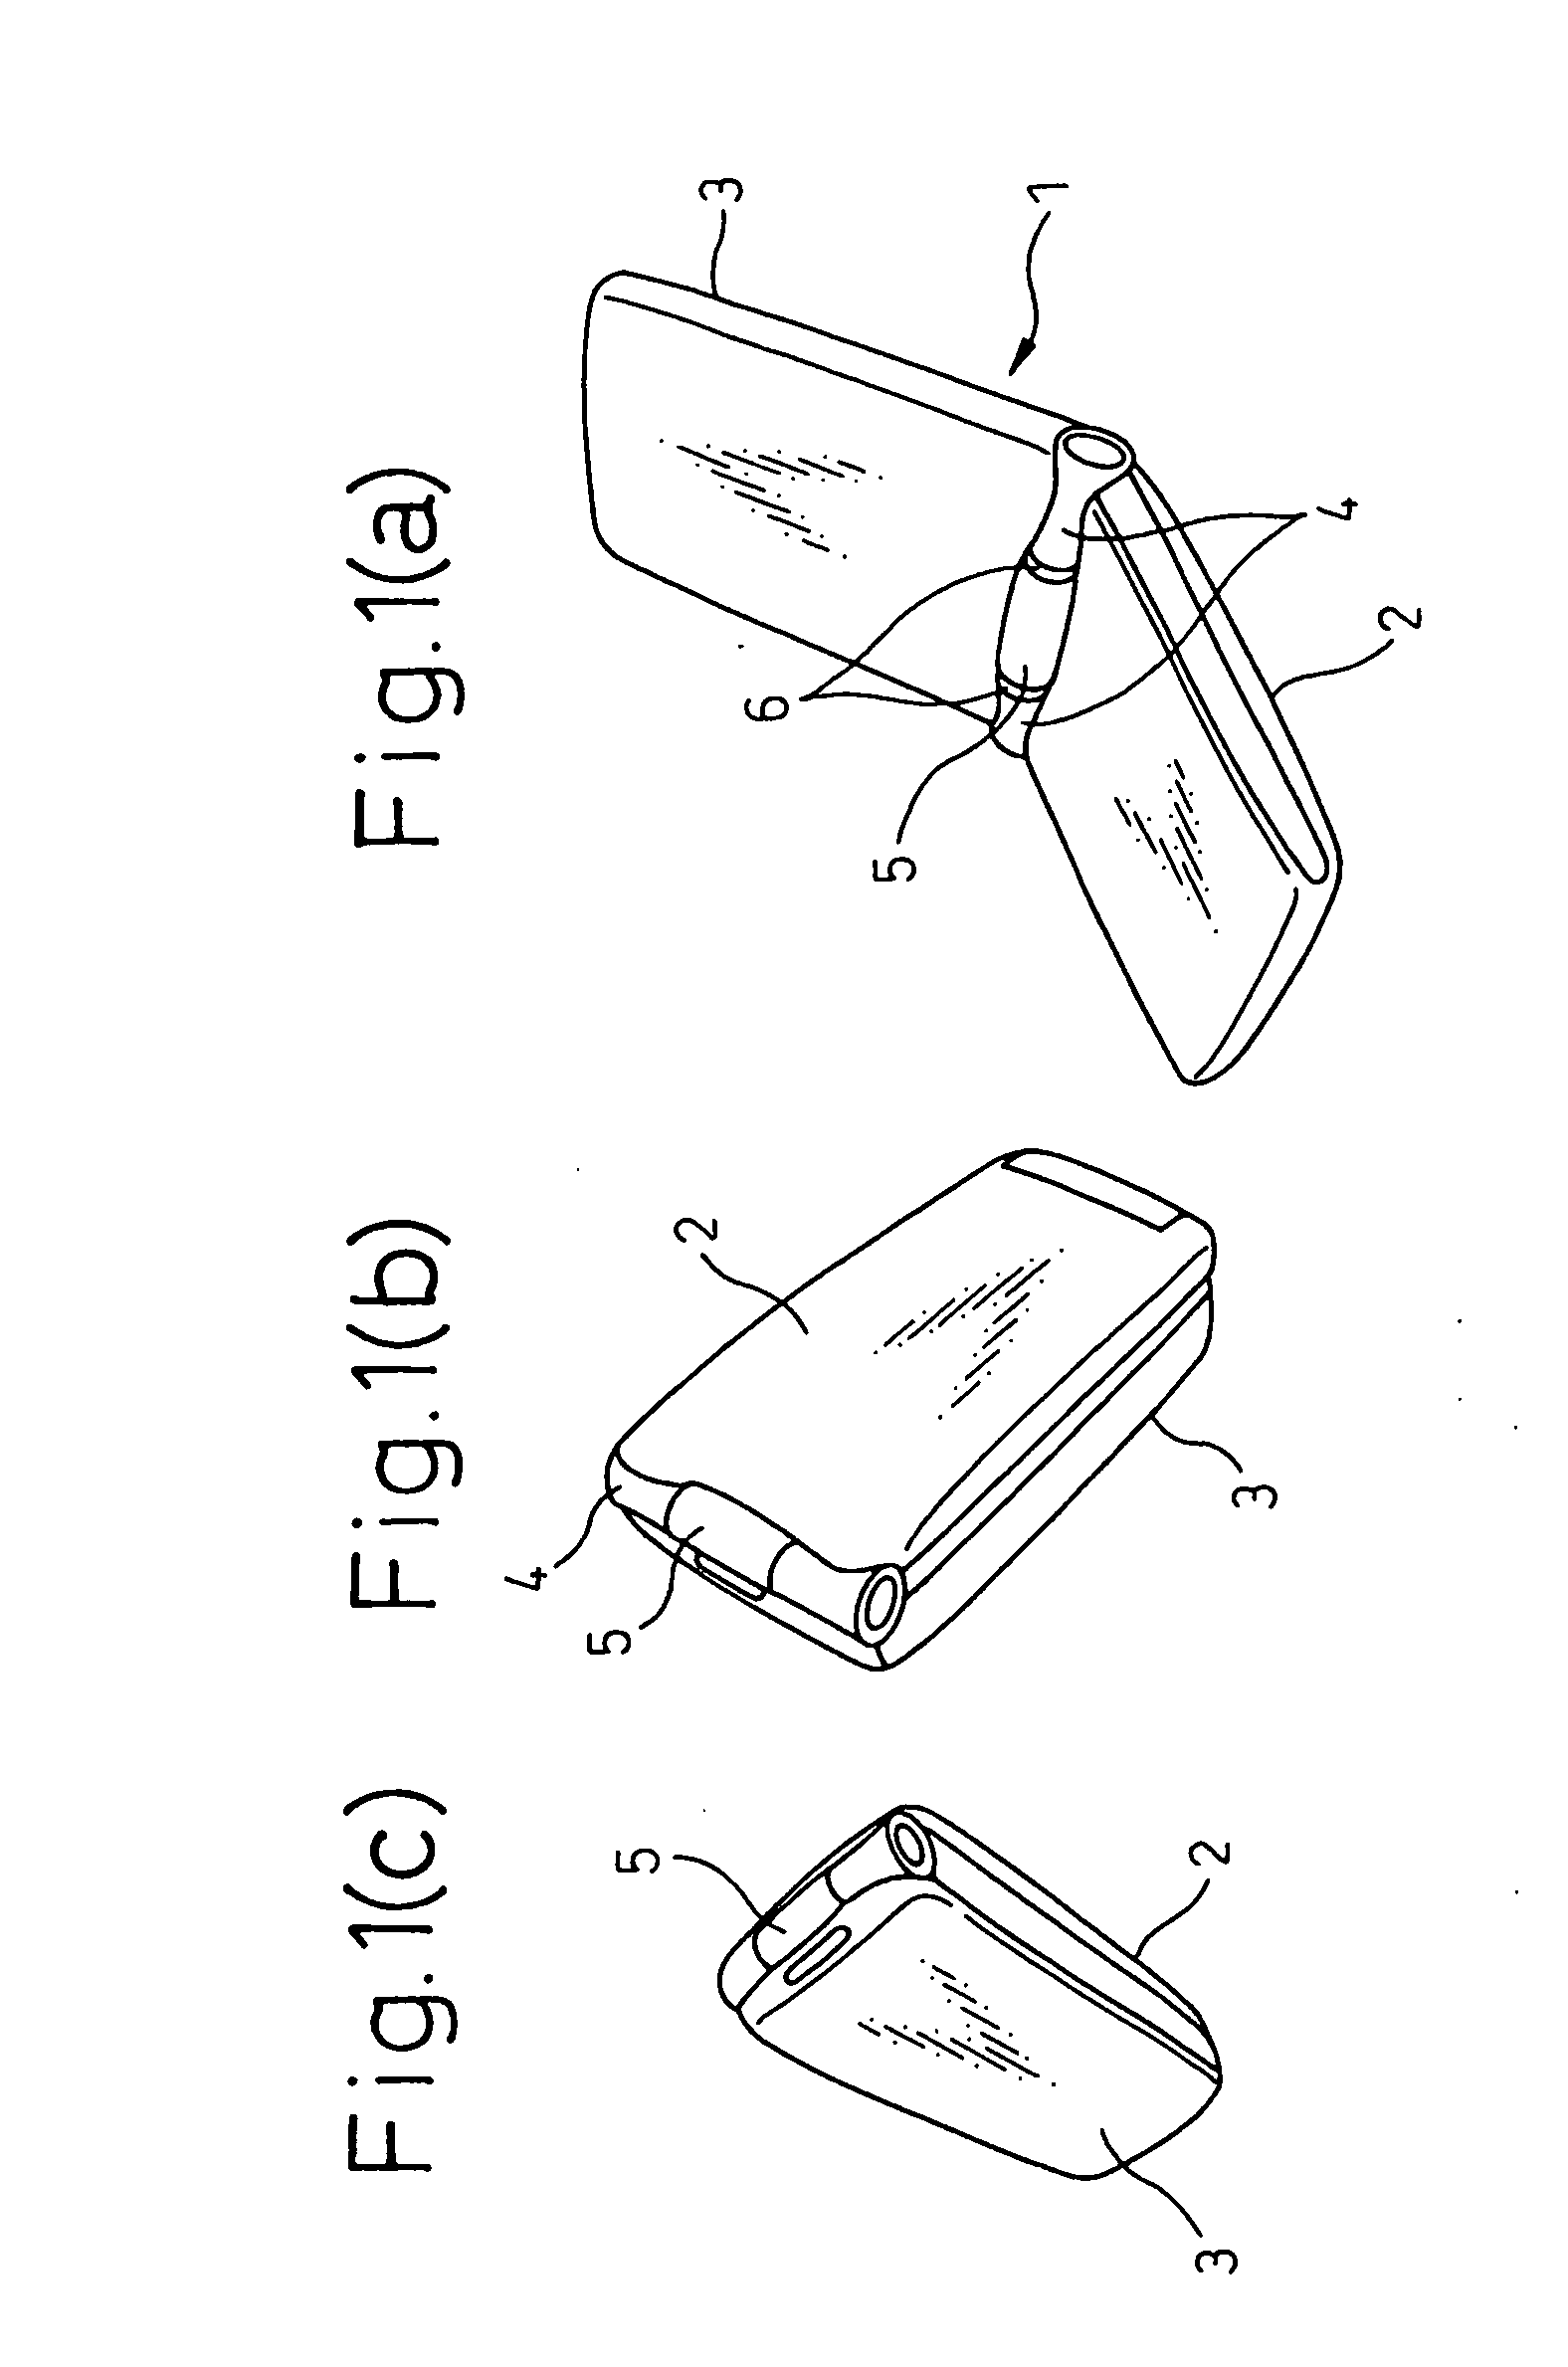 Folding type electronic device